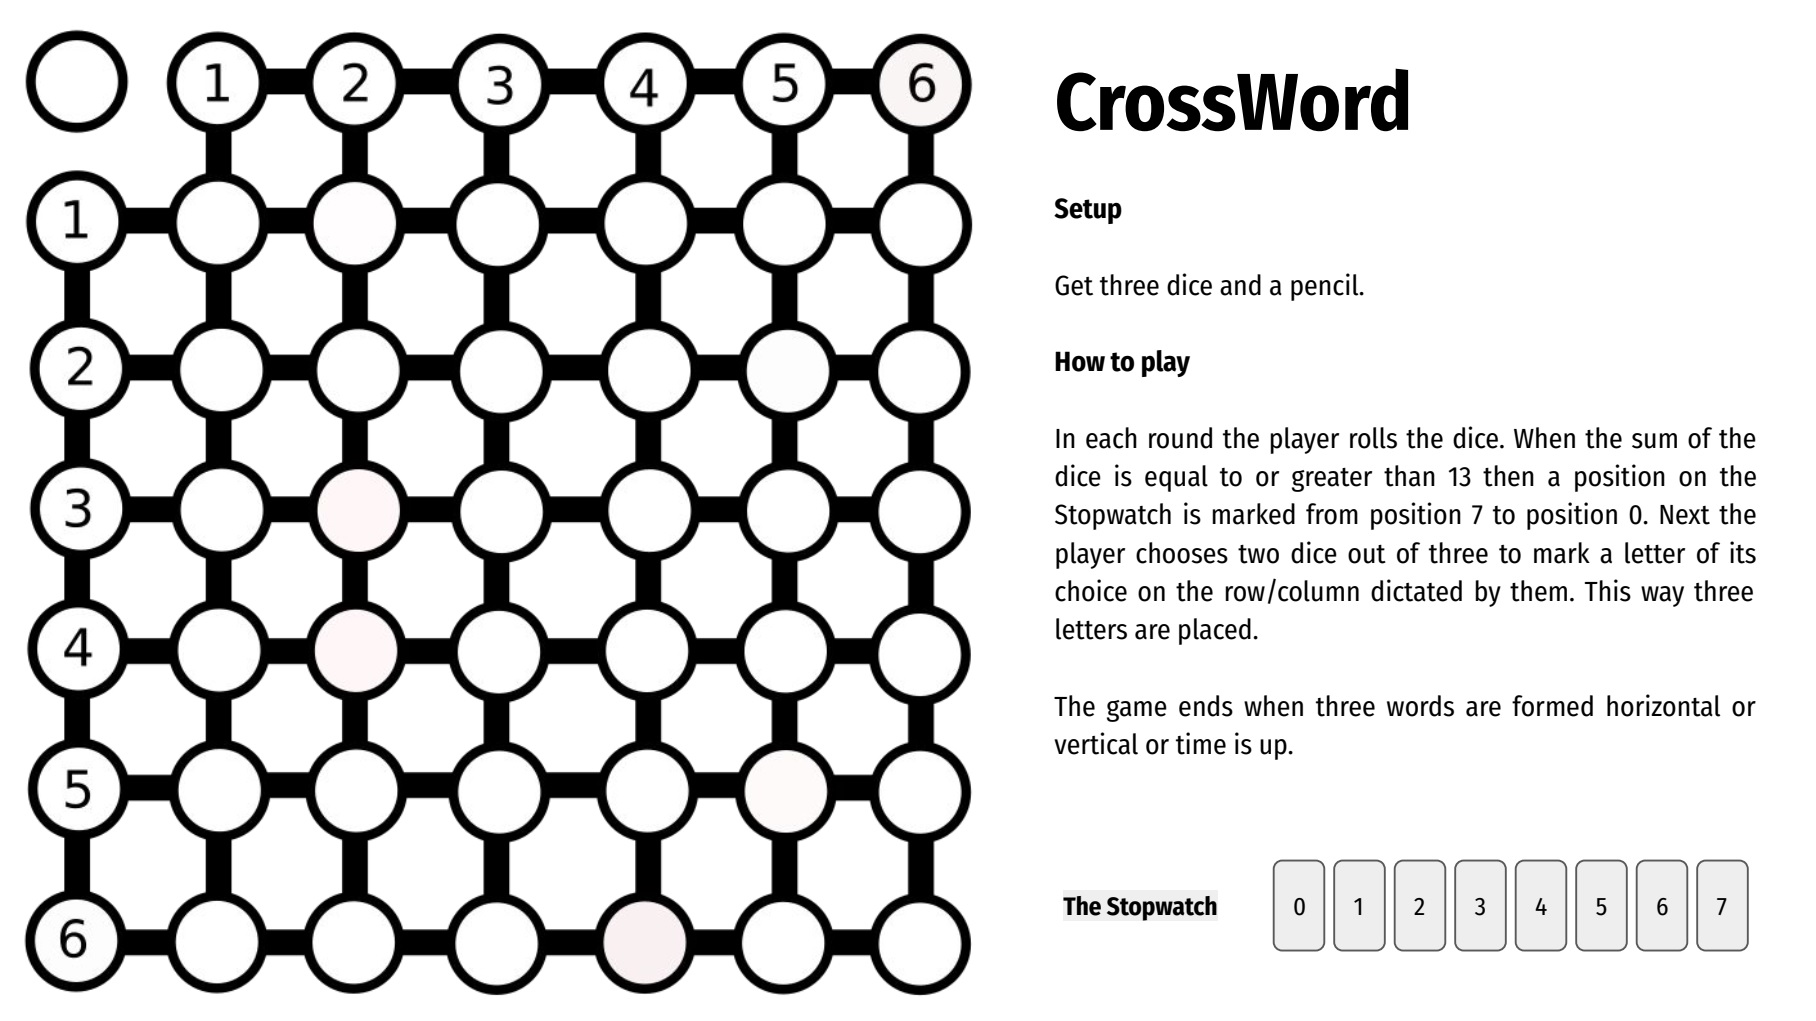 CrossWord - PnP Game, part of Codex Ictum Vol.01